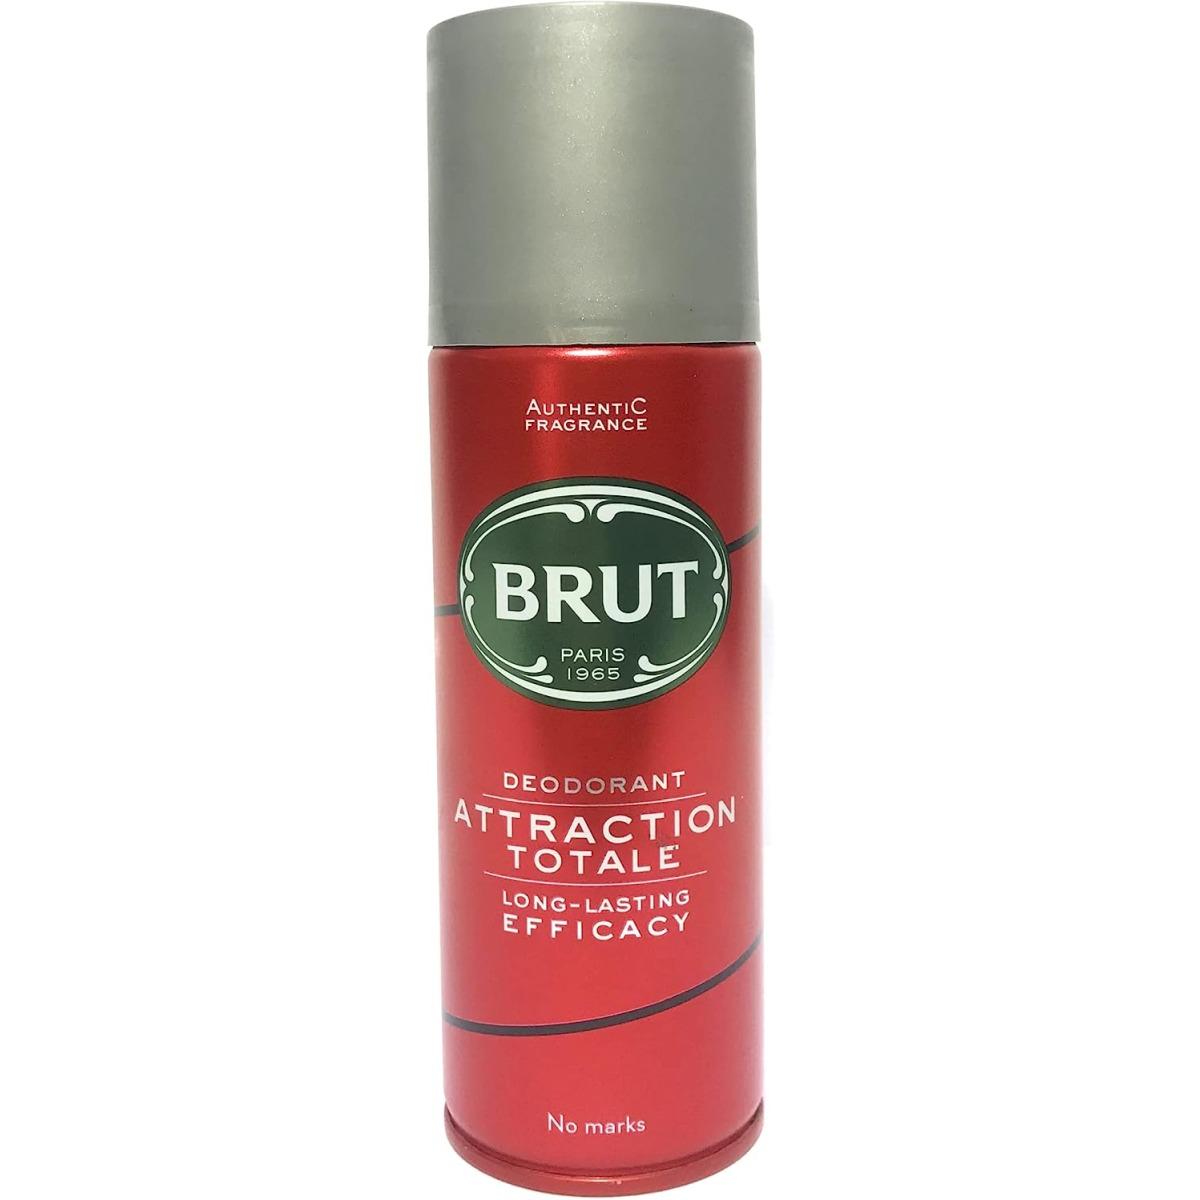 Brut - Deodorant Attraction Totale Lunga Efficacia e Durata 200 ml